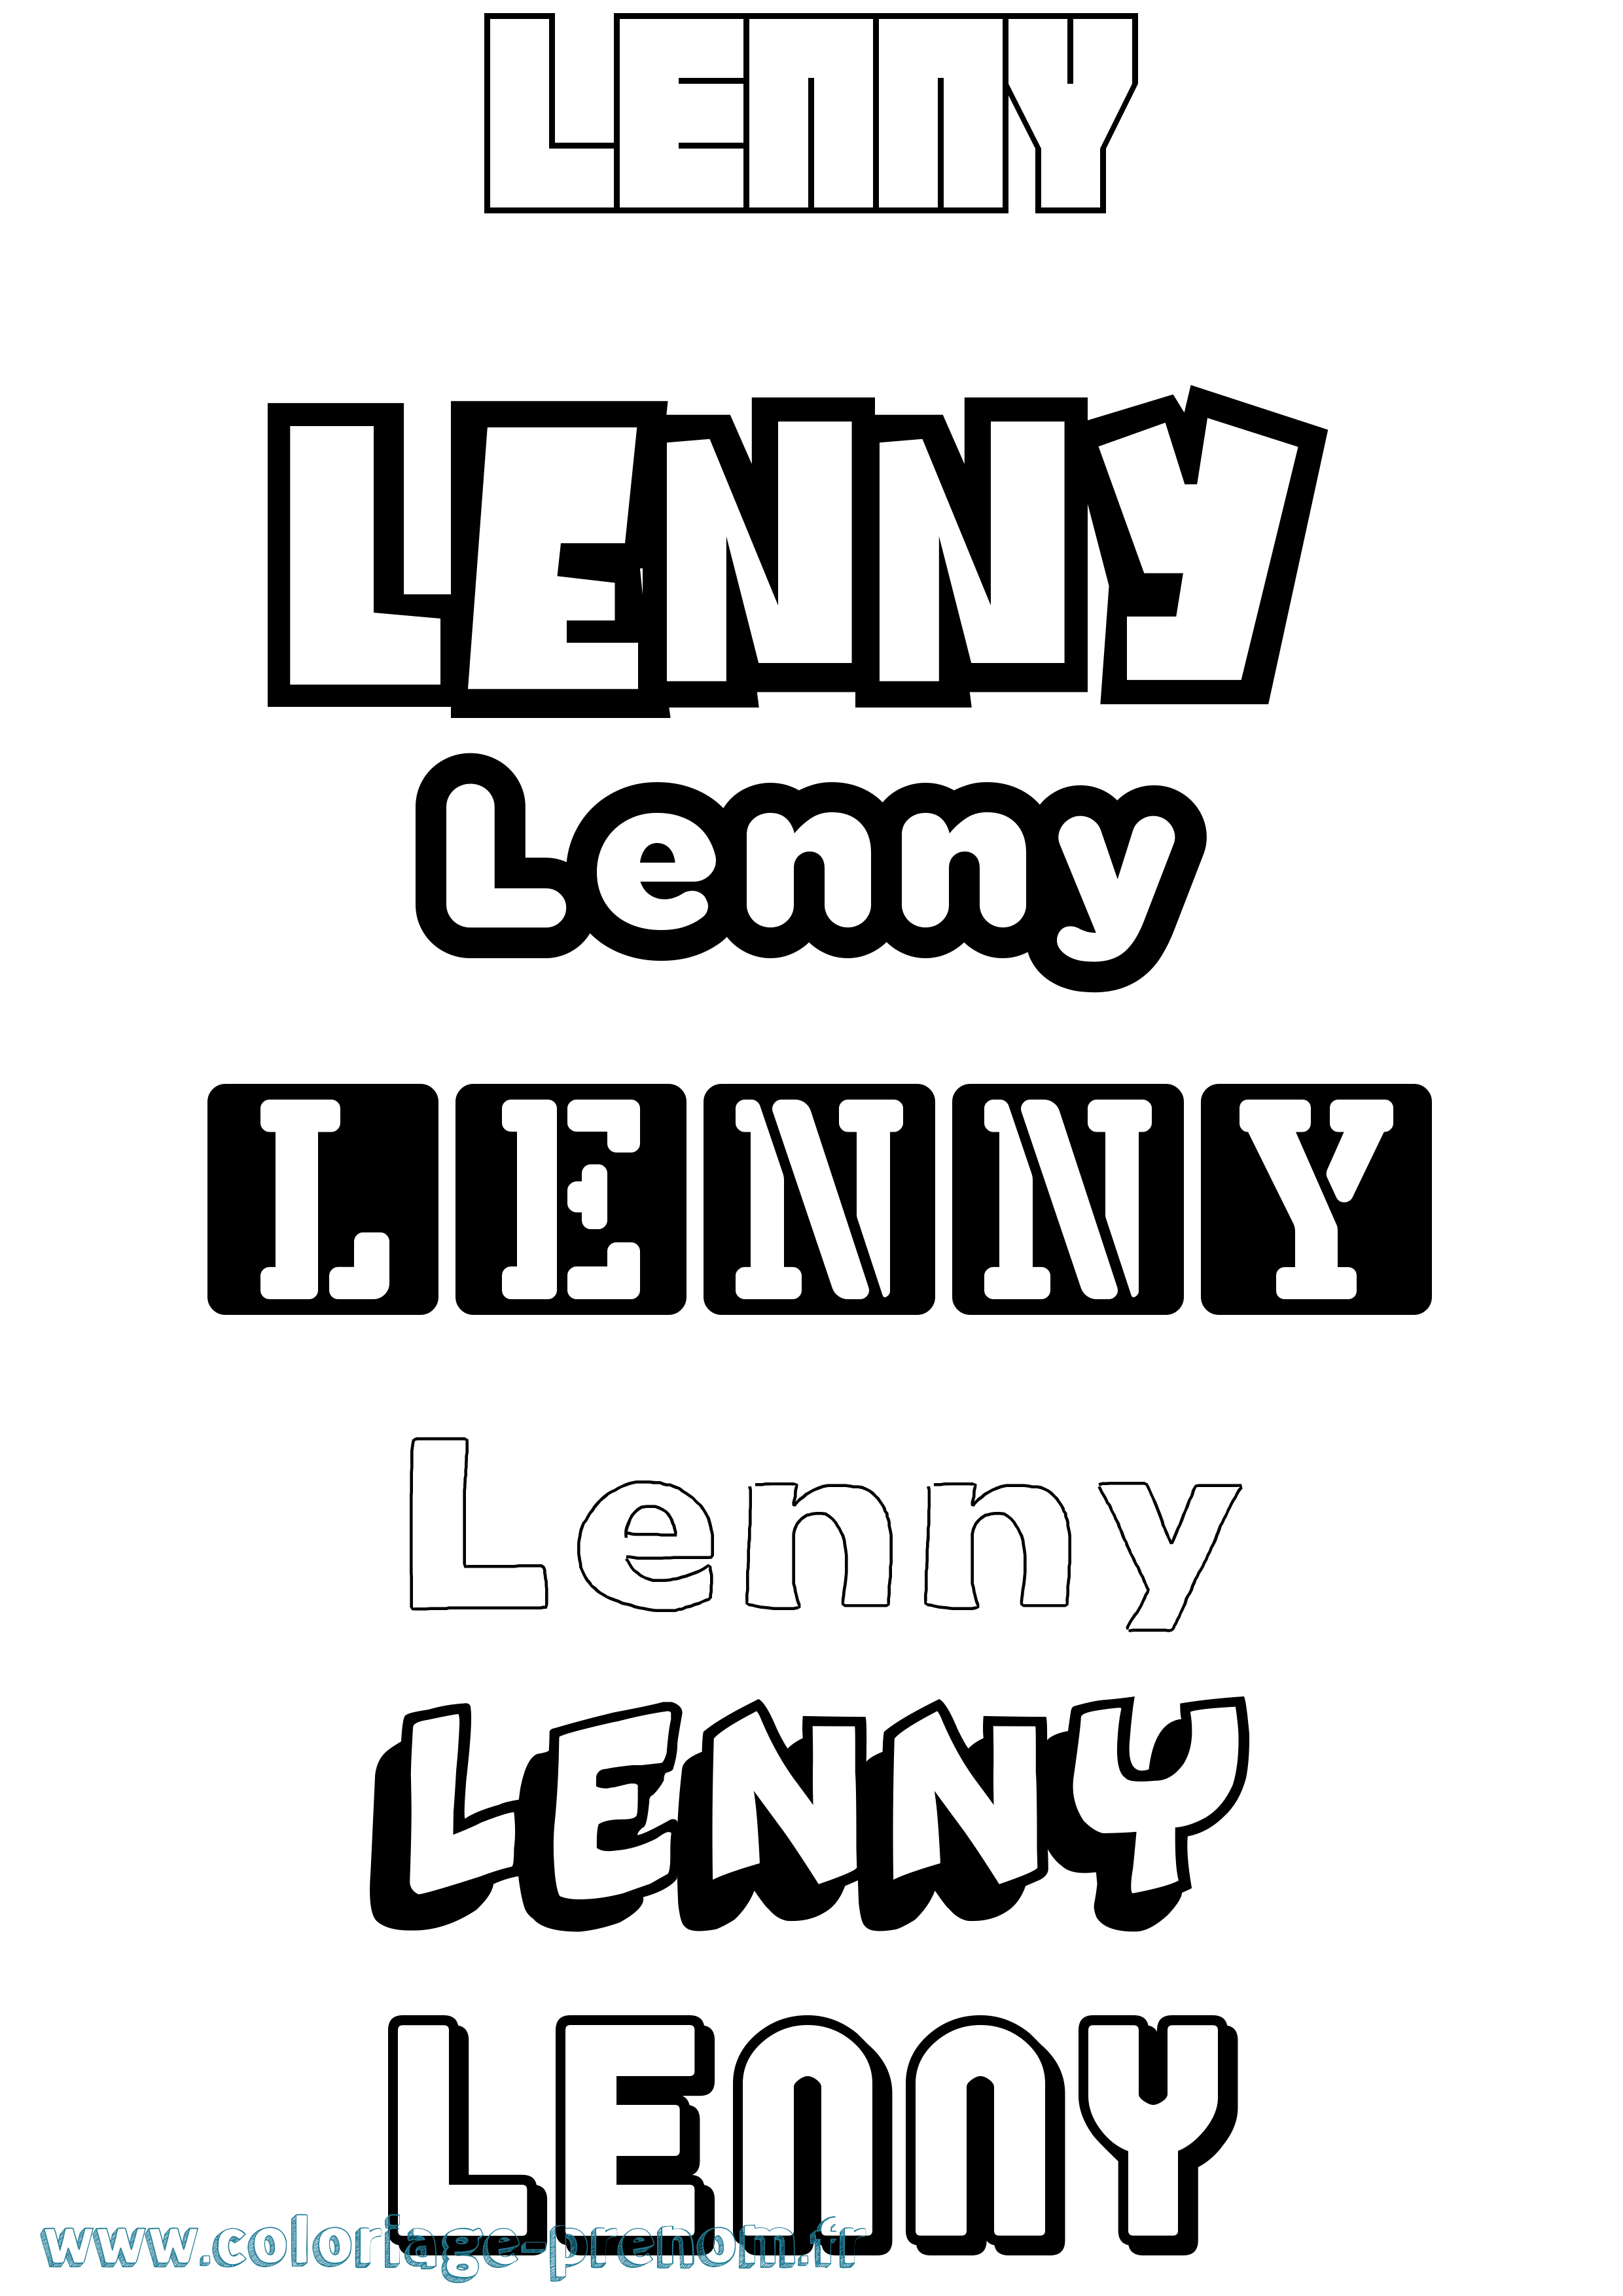 Coloriage prénom Lenny